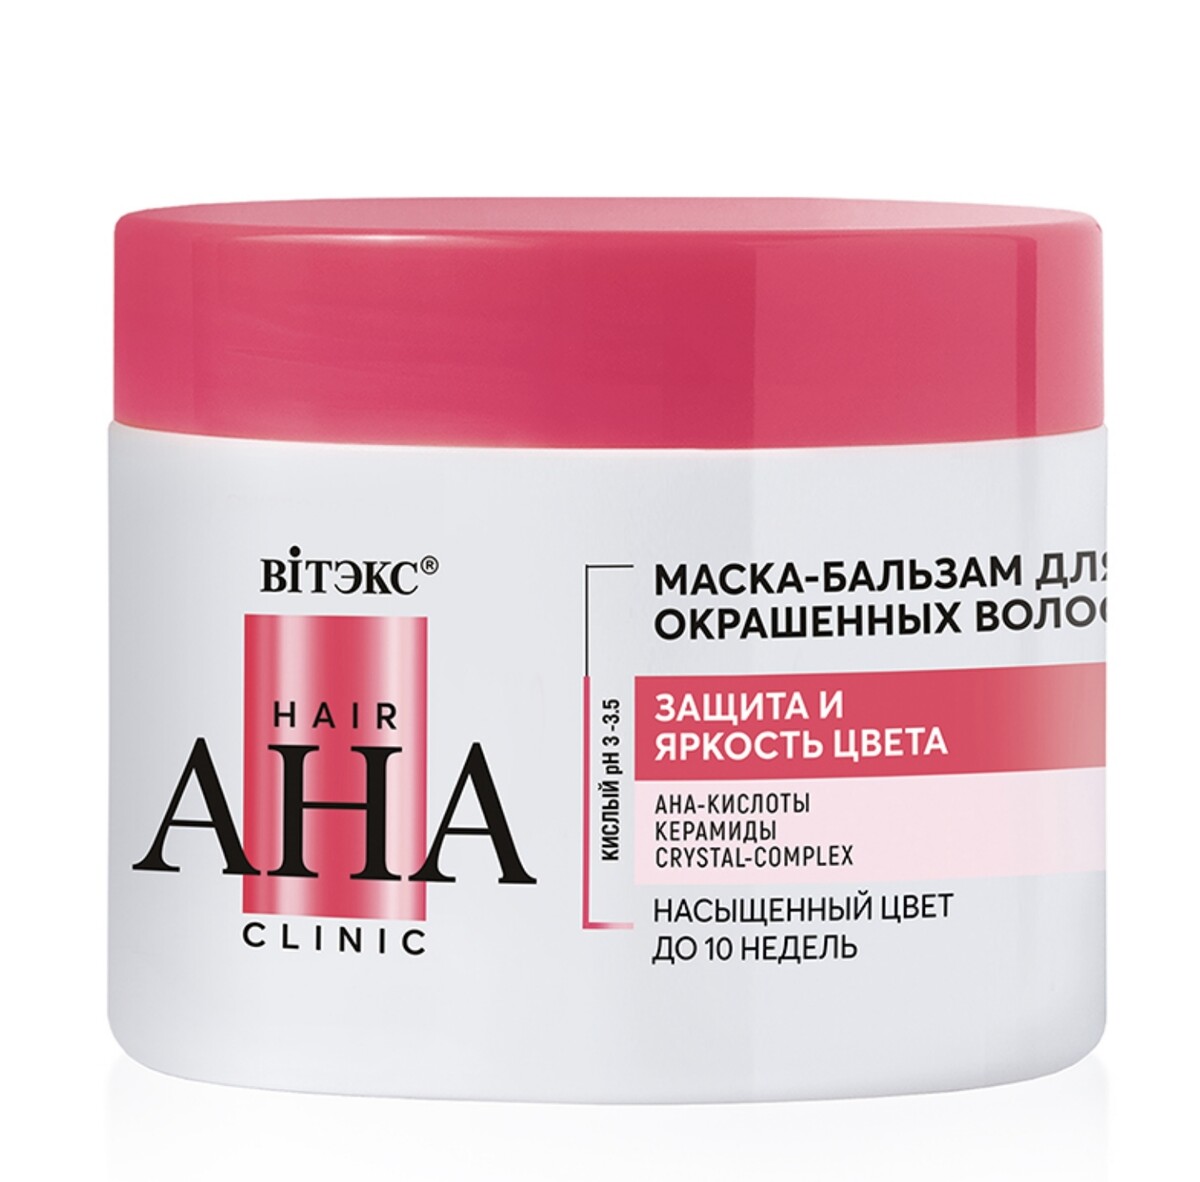 Hair aha clinic маска-бальзам для окрашенных волос защита и яркость цвета 300мл бальзам маска для волос 200мл